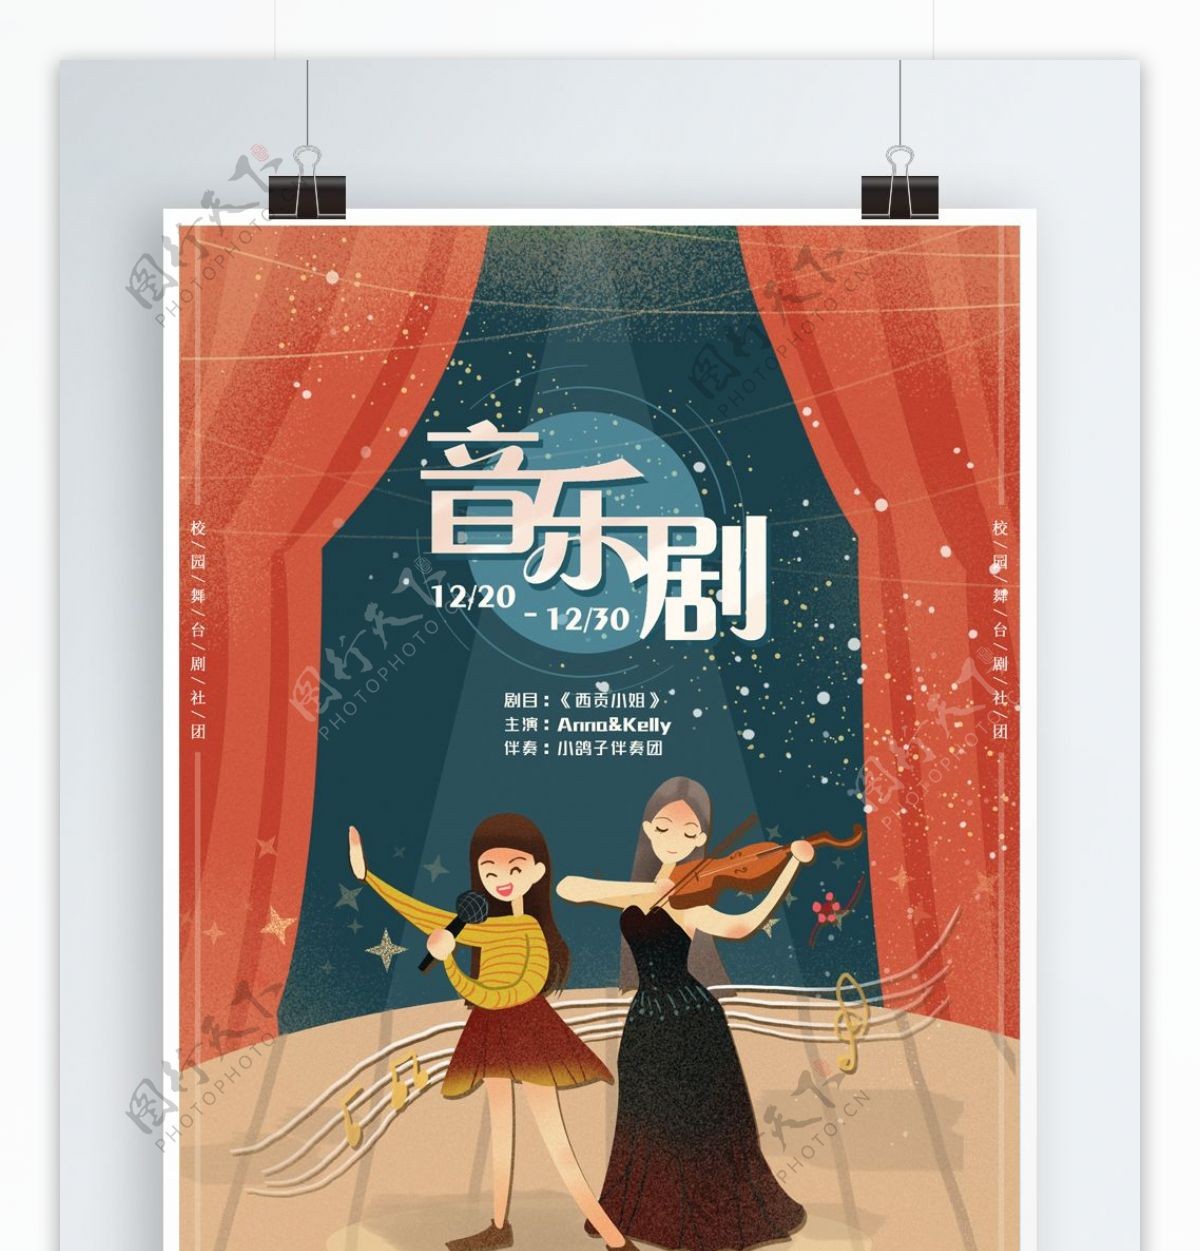 音乐剧演出海报舞台剧歌剧宣传卡通手绘设计